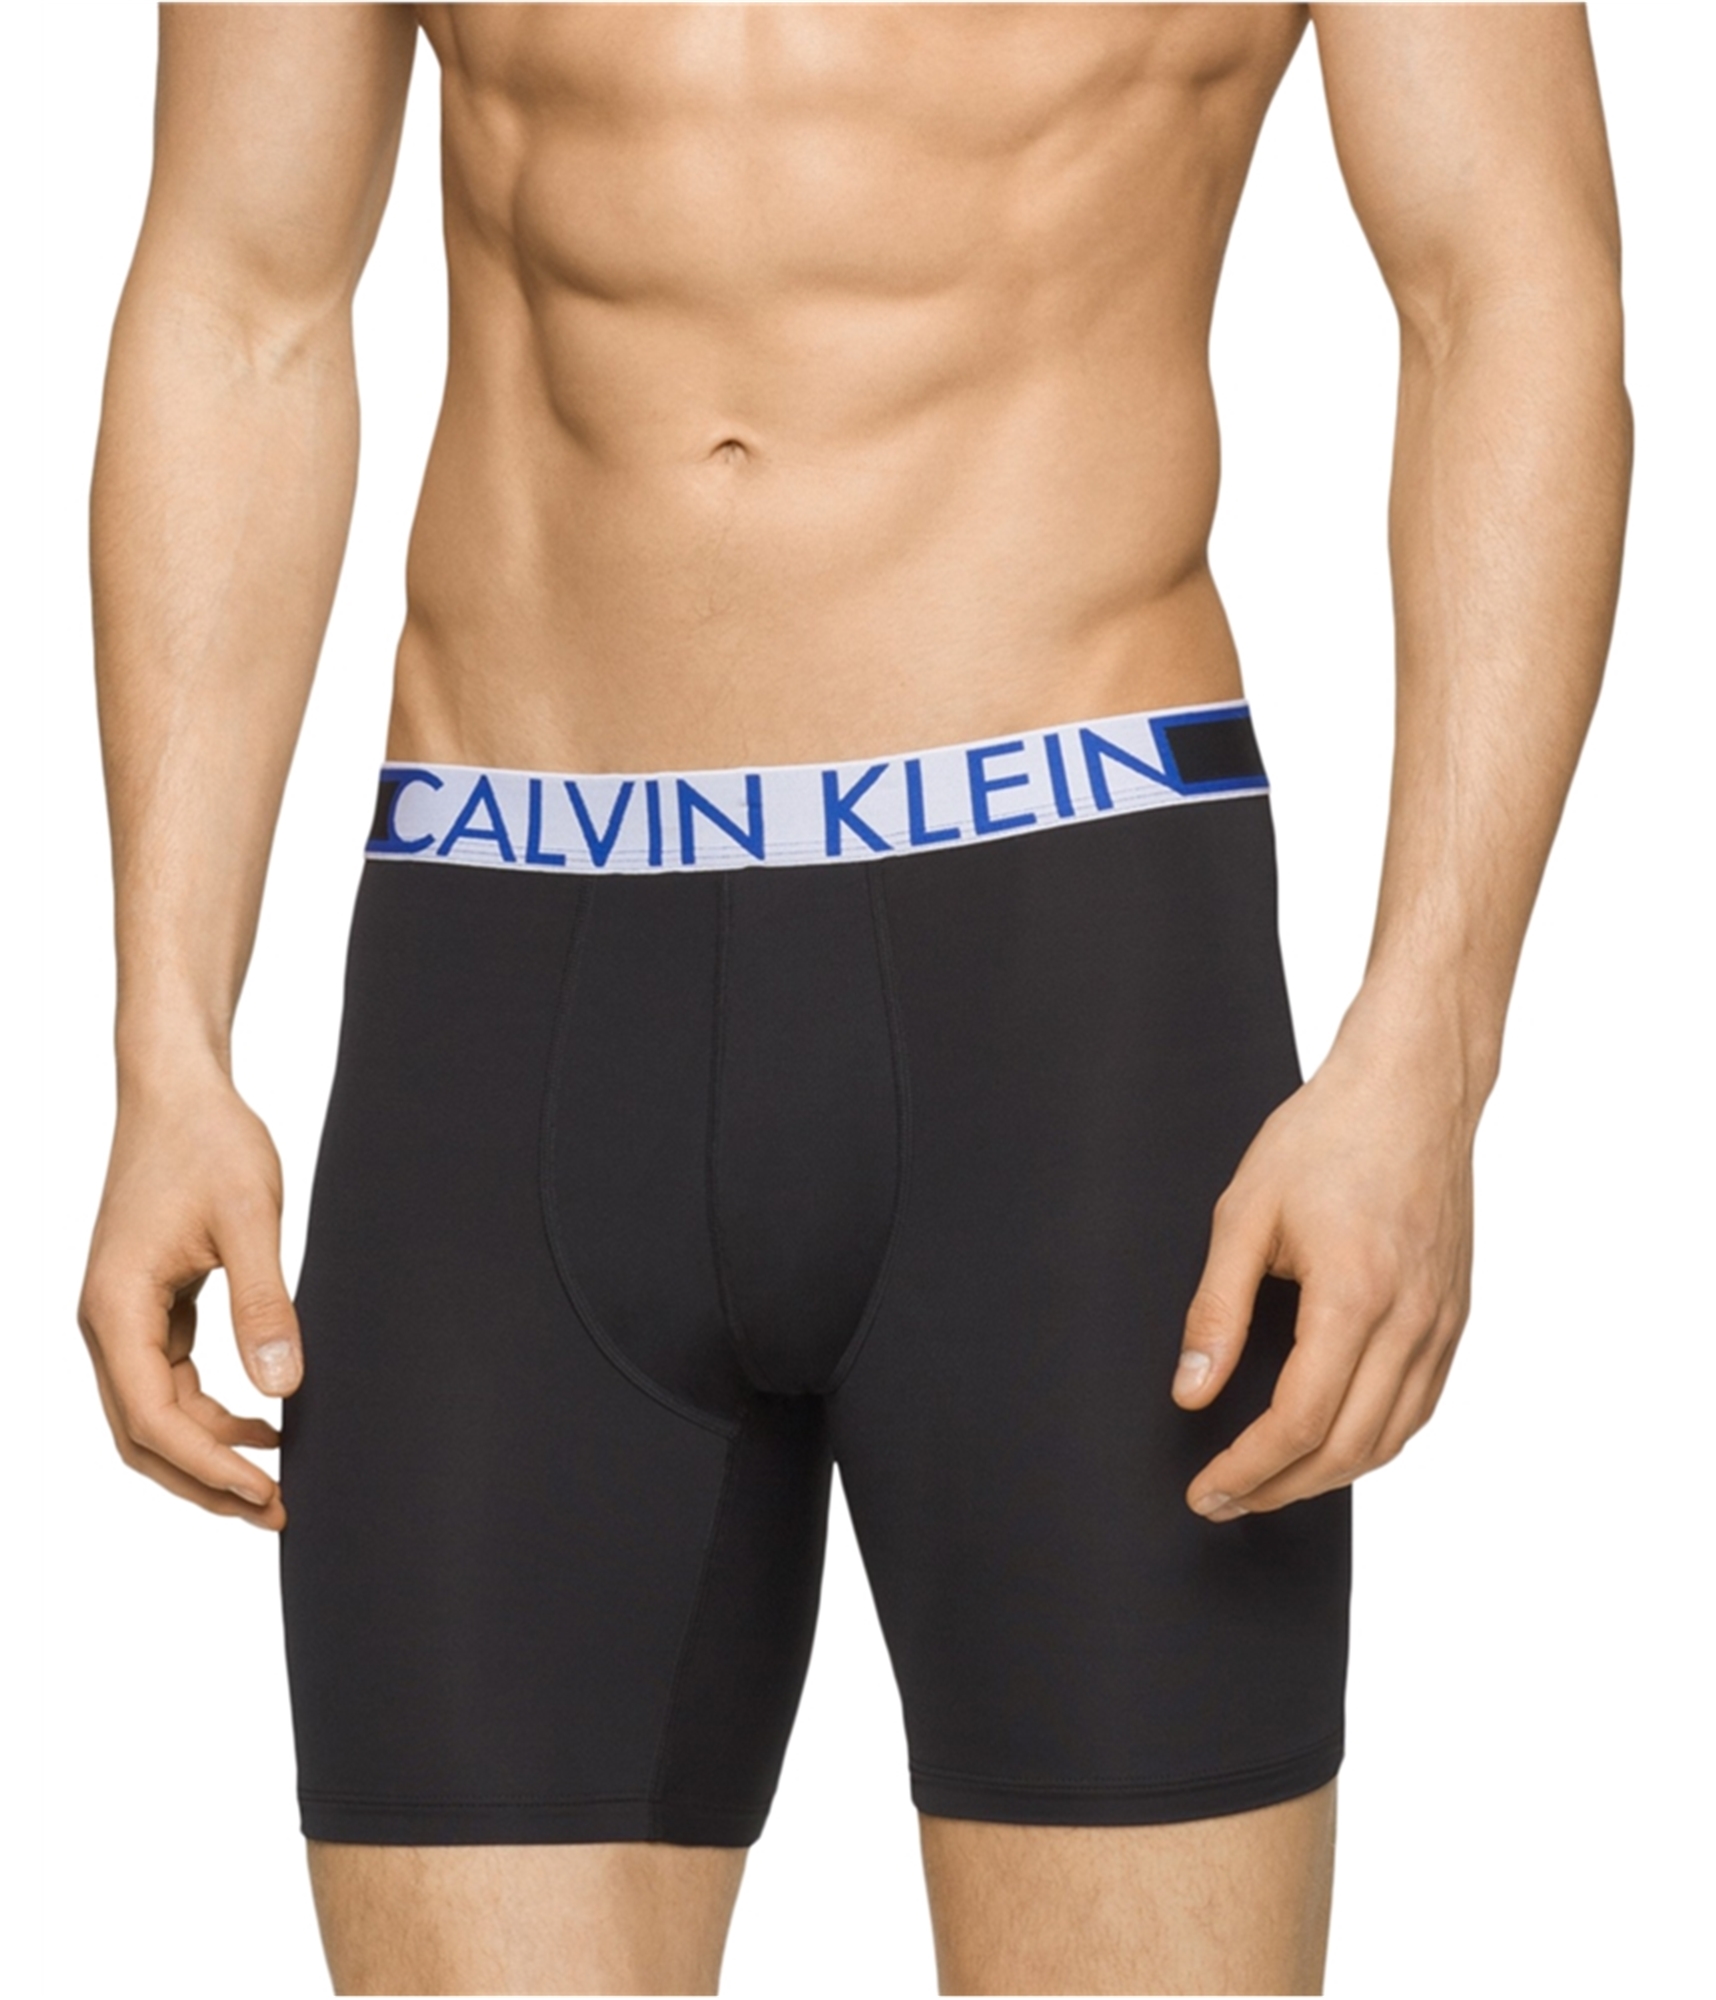 Buy a Mens Calvin Klein Performance Underwear Boxer Briefs Online |  